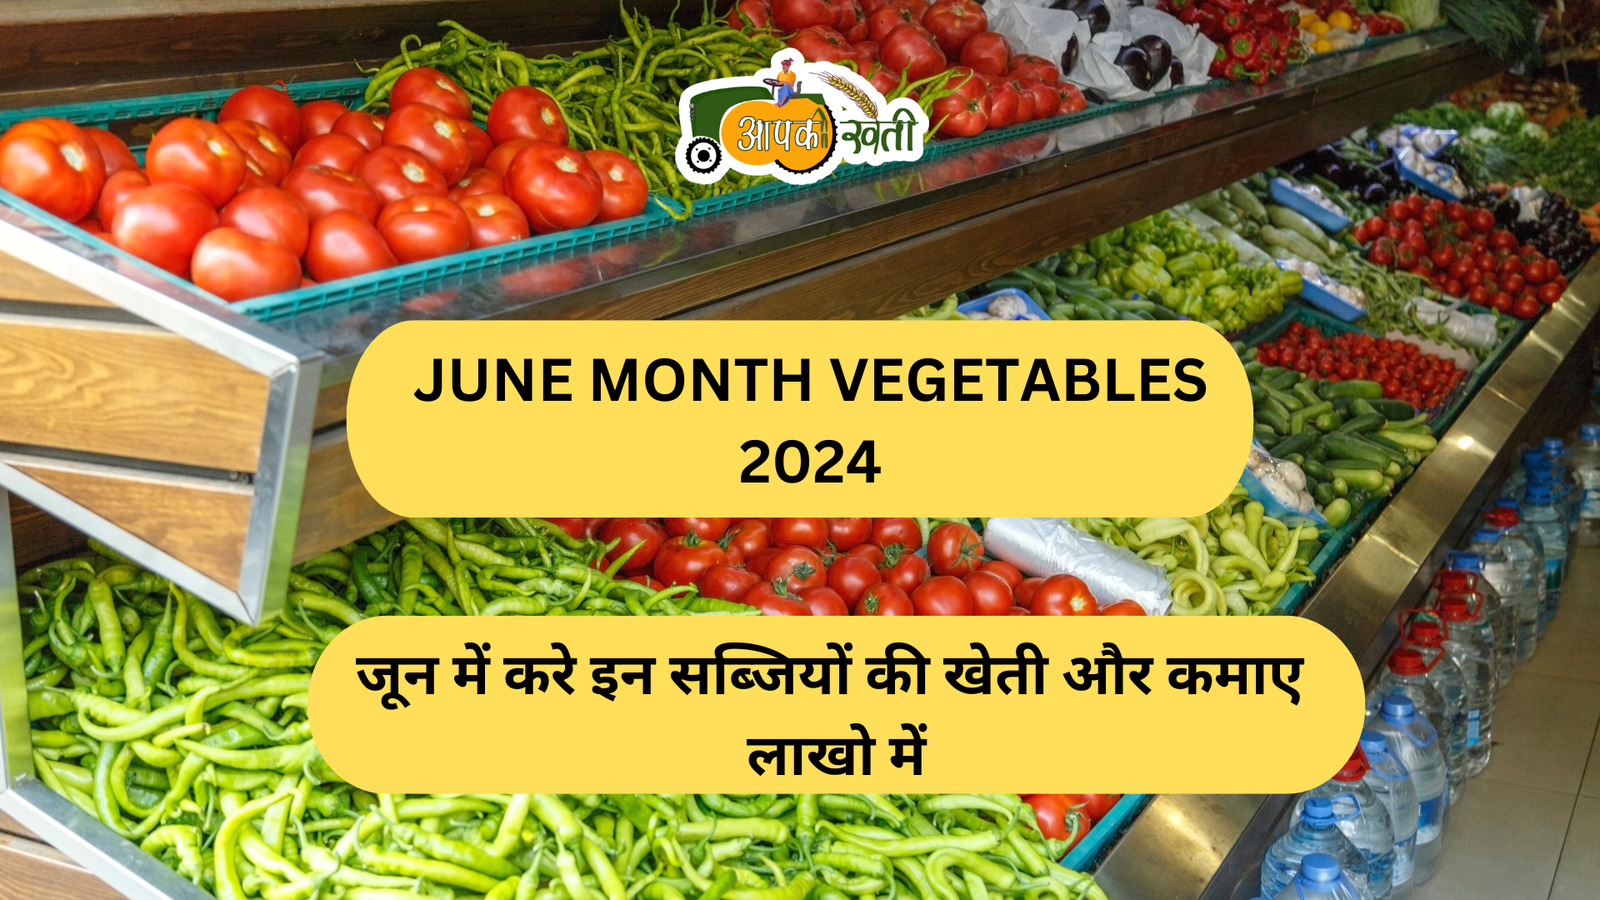 June Month Vegetables 2024 aapkekheti.com